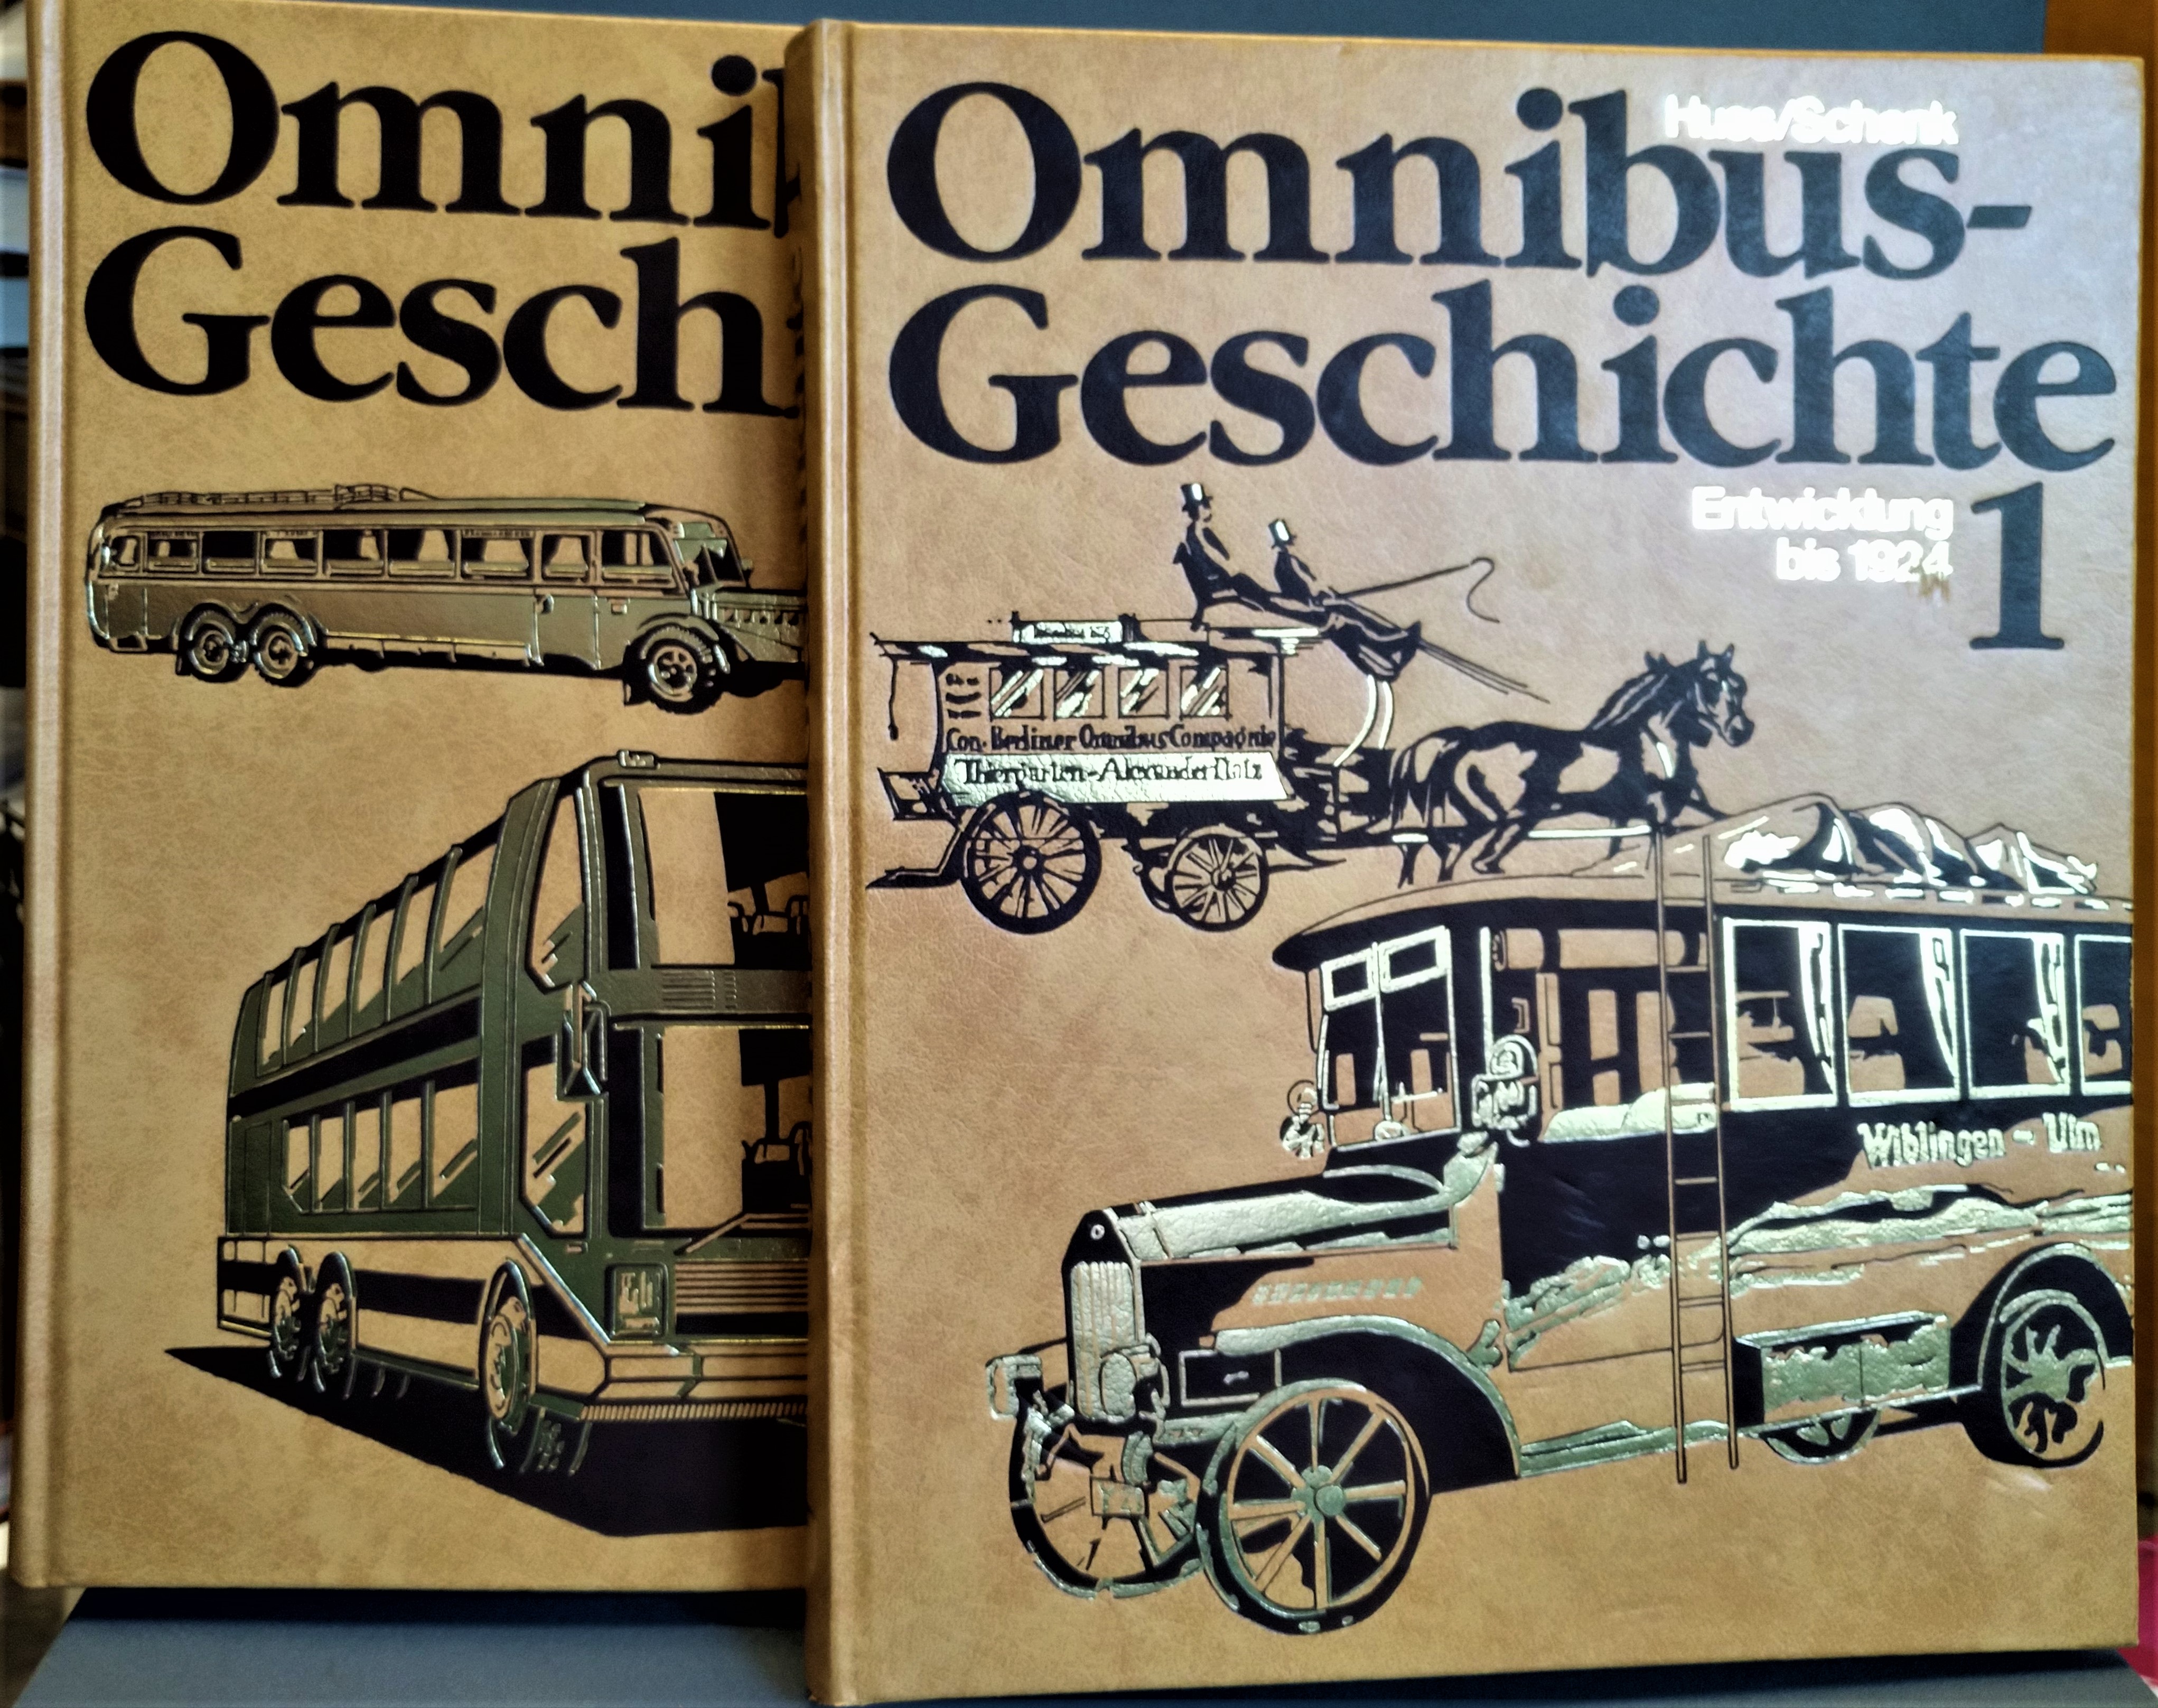 Omnibus-Geschichte Band I & Band II. 1) Entwicklung bis 1924. 2) Entwicklung ab 1924 - Wolfgang Huss, Wolf Schenk